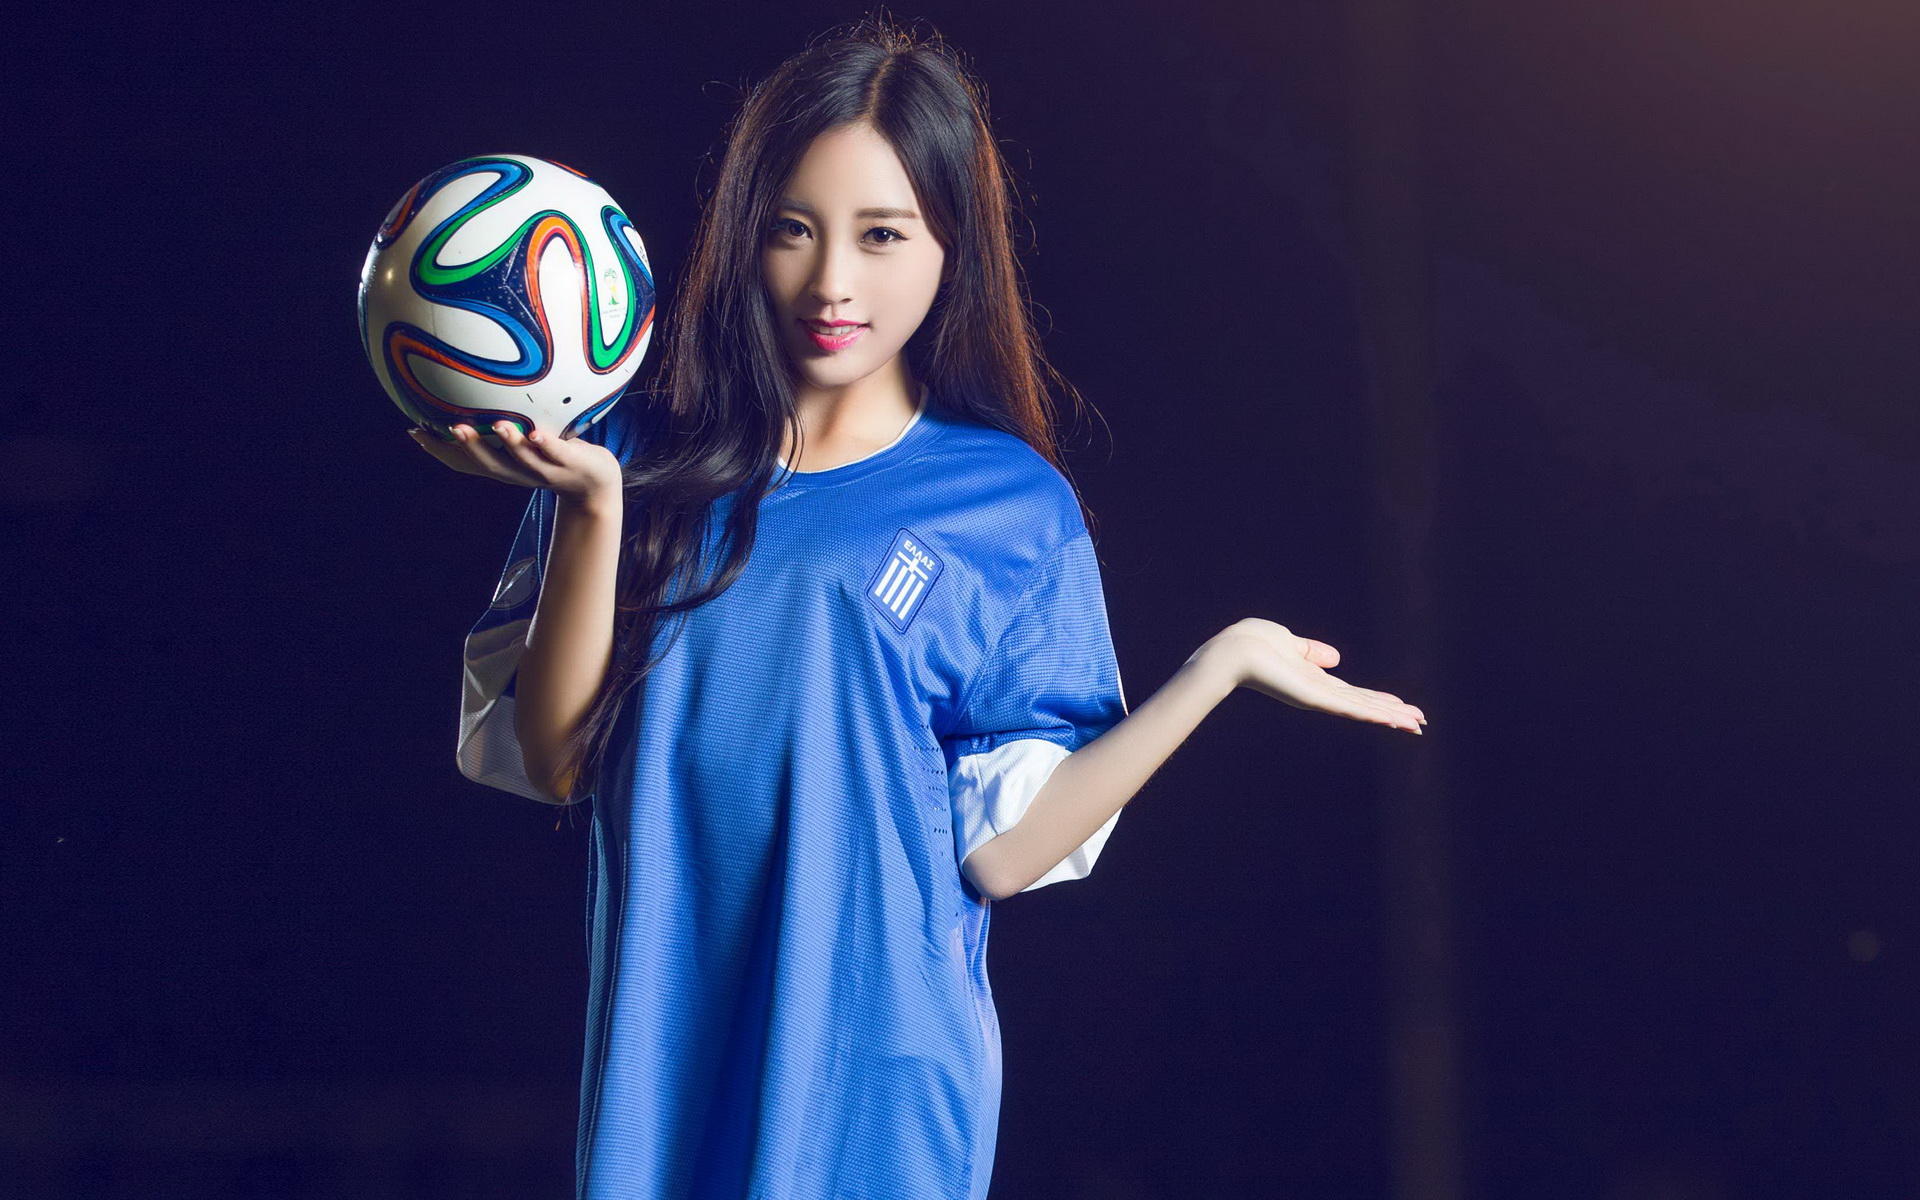 サッカー少女の壁紙,フットボール,フリースタイルサッカー,サッカーボール,tシャツ,スポーツウェア